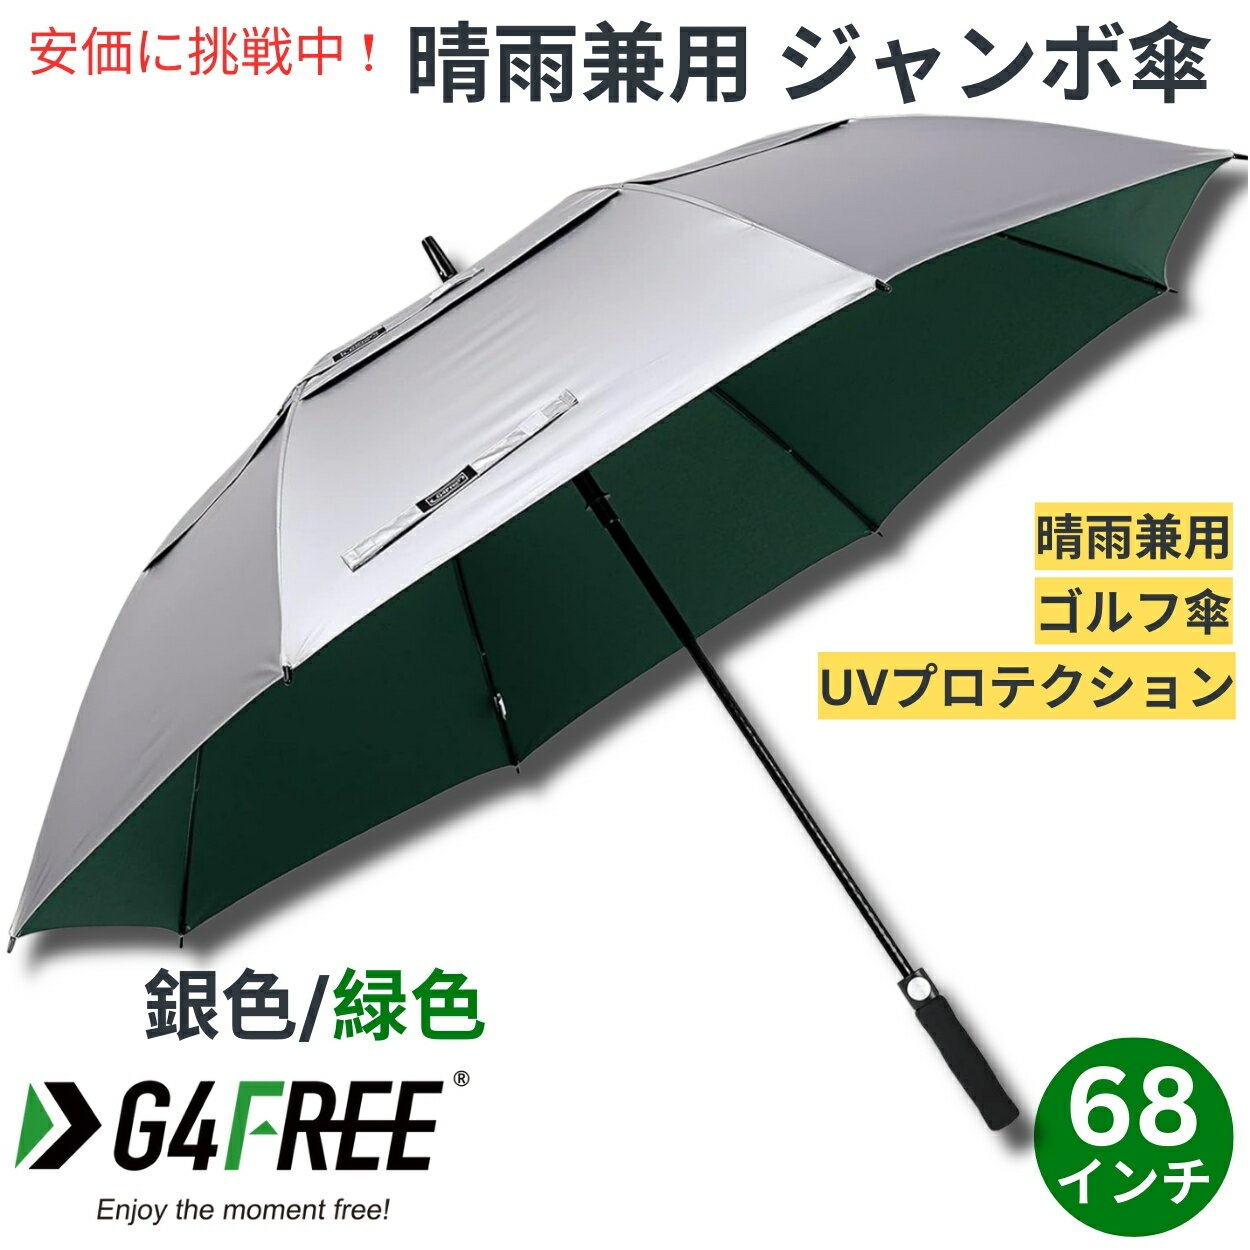 ジャンボ傘 G4Free 68Inch Golf Umbrella Auto Open Sun Rain Umbrella Silver Green ゴルフ傘 晴雨兼用傘 ジャンボ傘 UVパラソル 自動オープン 銀色 緑色